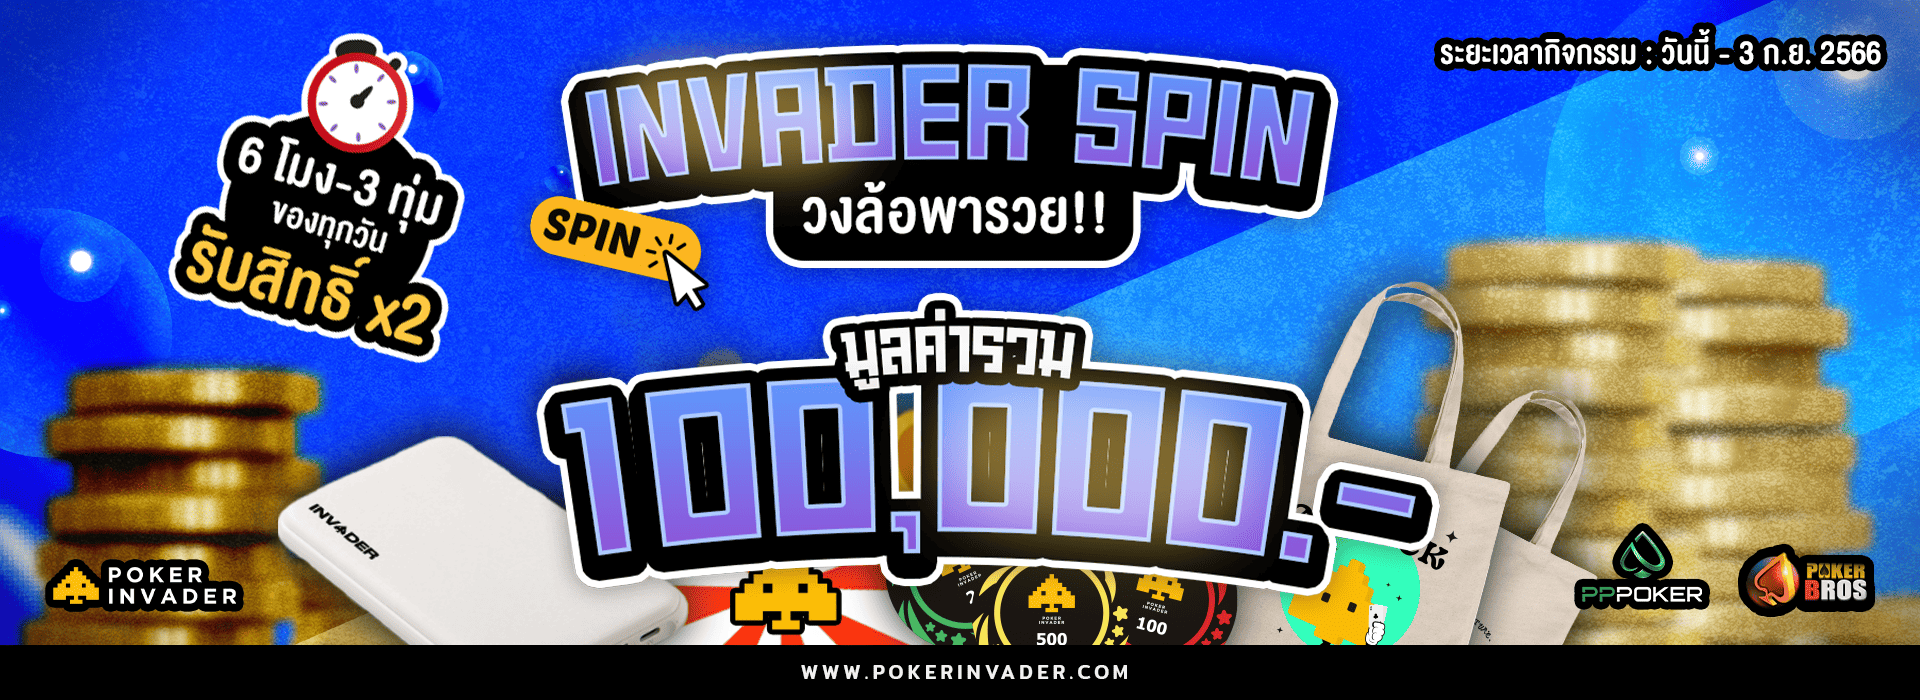 invader spin